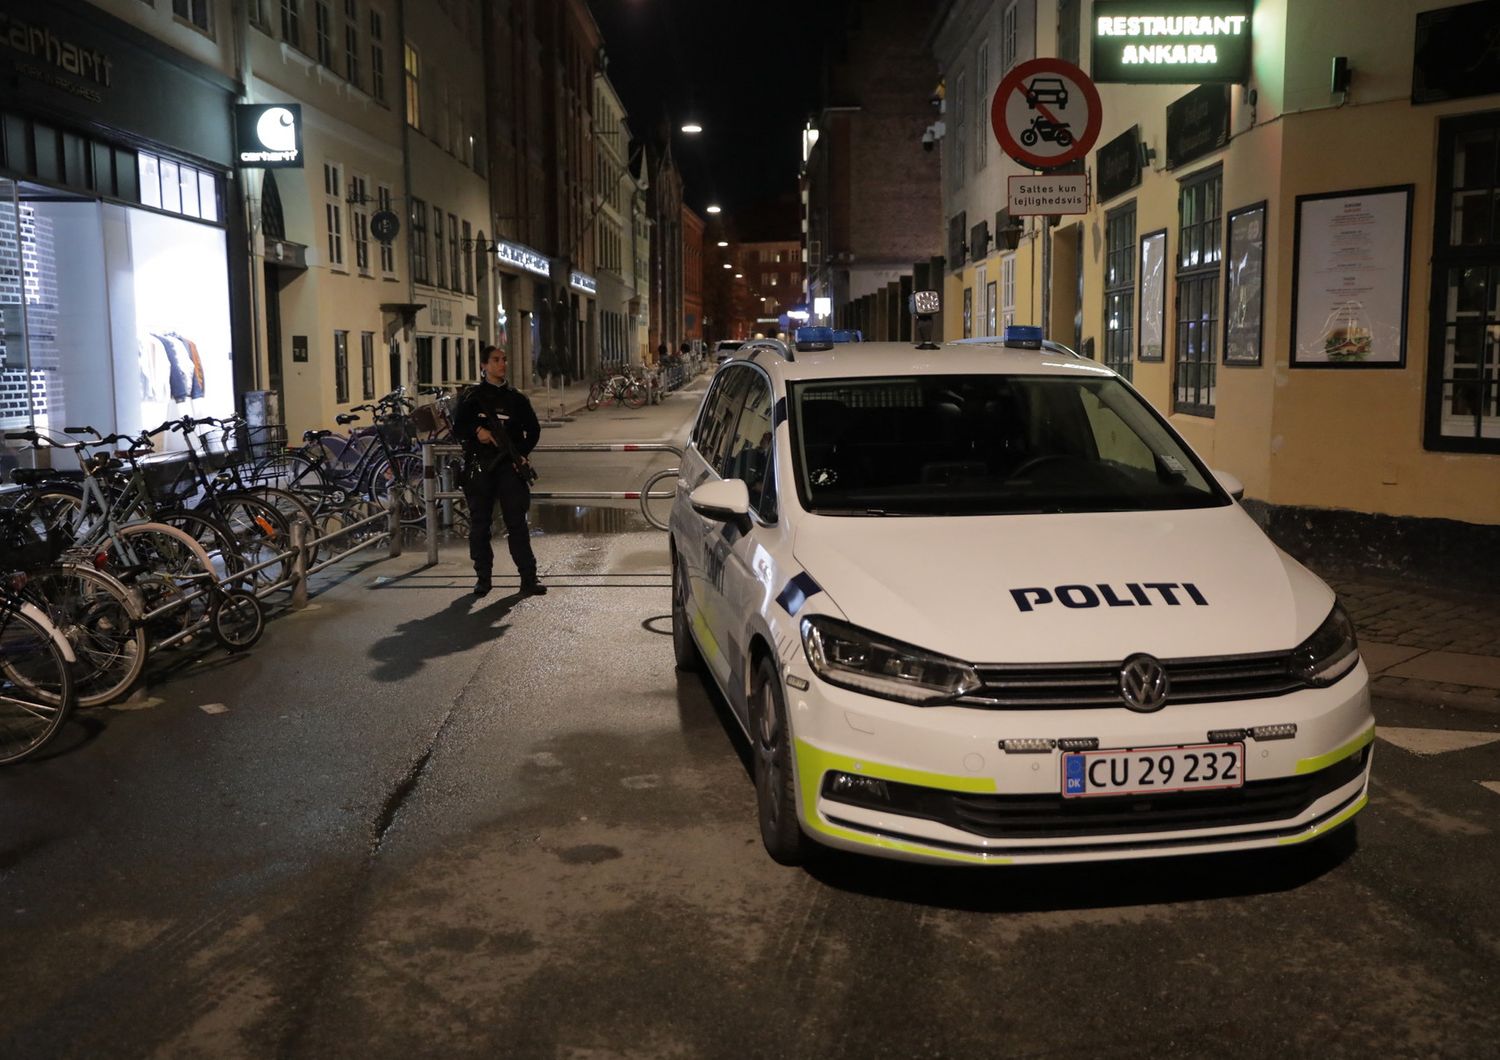 Polizia danese